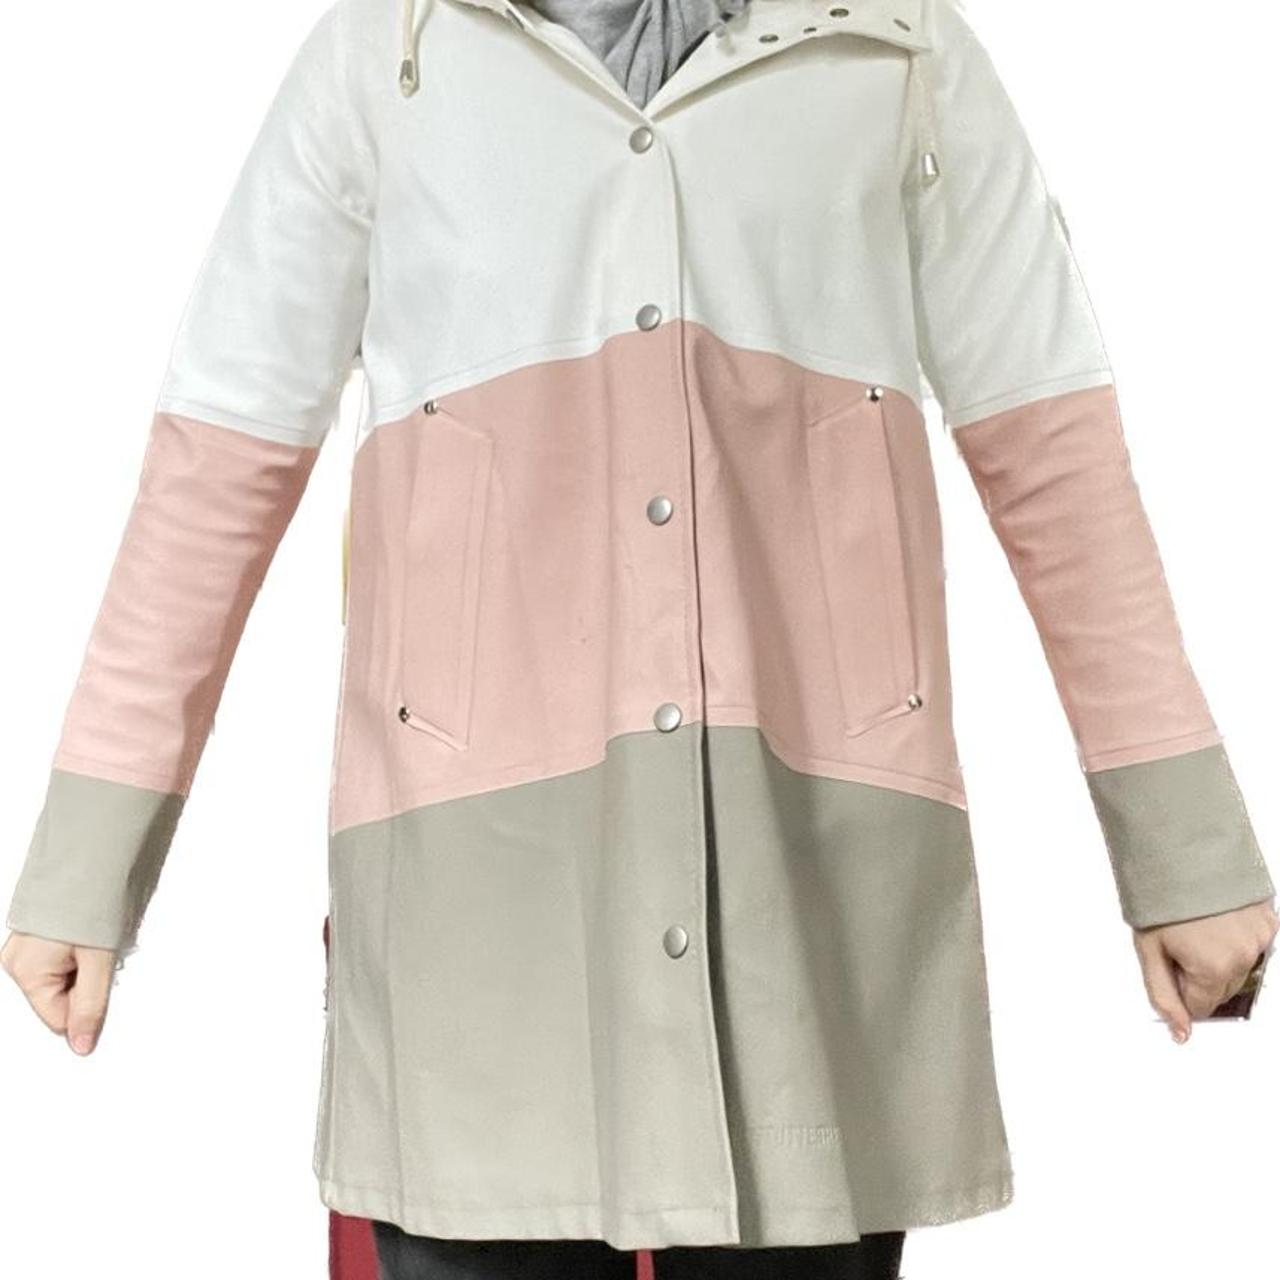 Product Image 1 - Stutterheim Raincoat. Tri-color. So cute